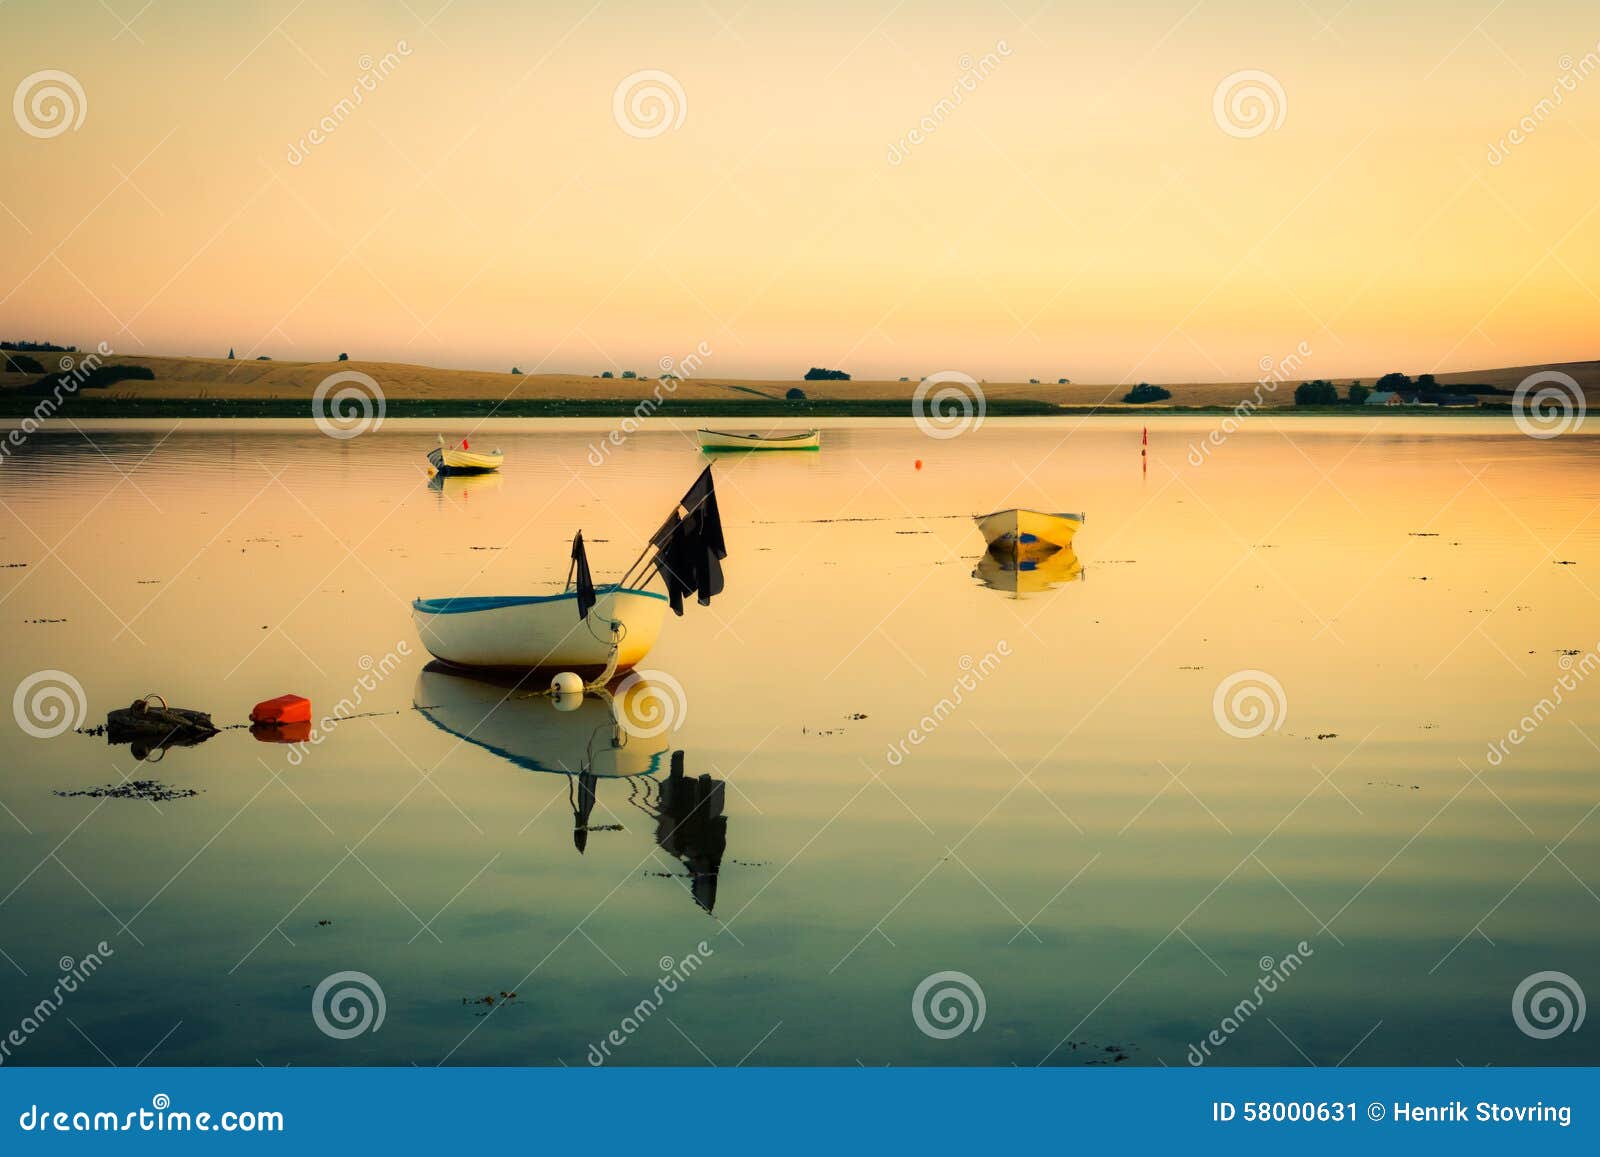 Anche calma alla baia (retro). Le piccole barche si trovano in una piccola baia al tramonto sull'acqua calma con le ondulazioni molli - pacifiche e idilliache